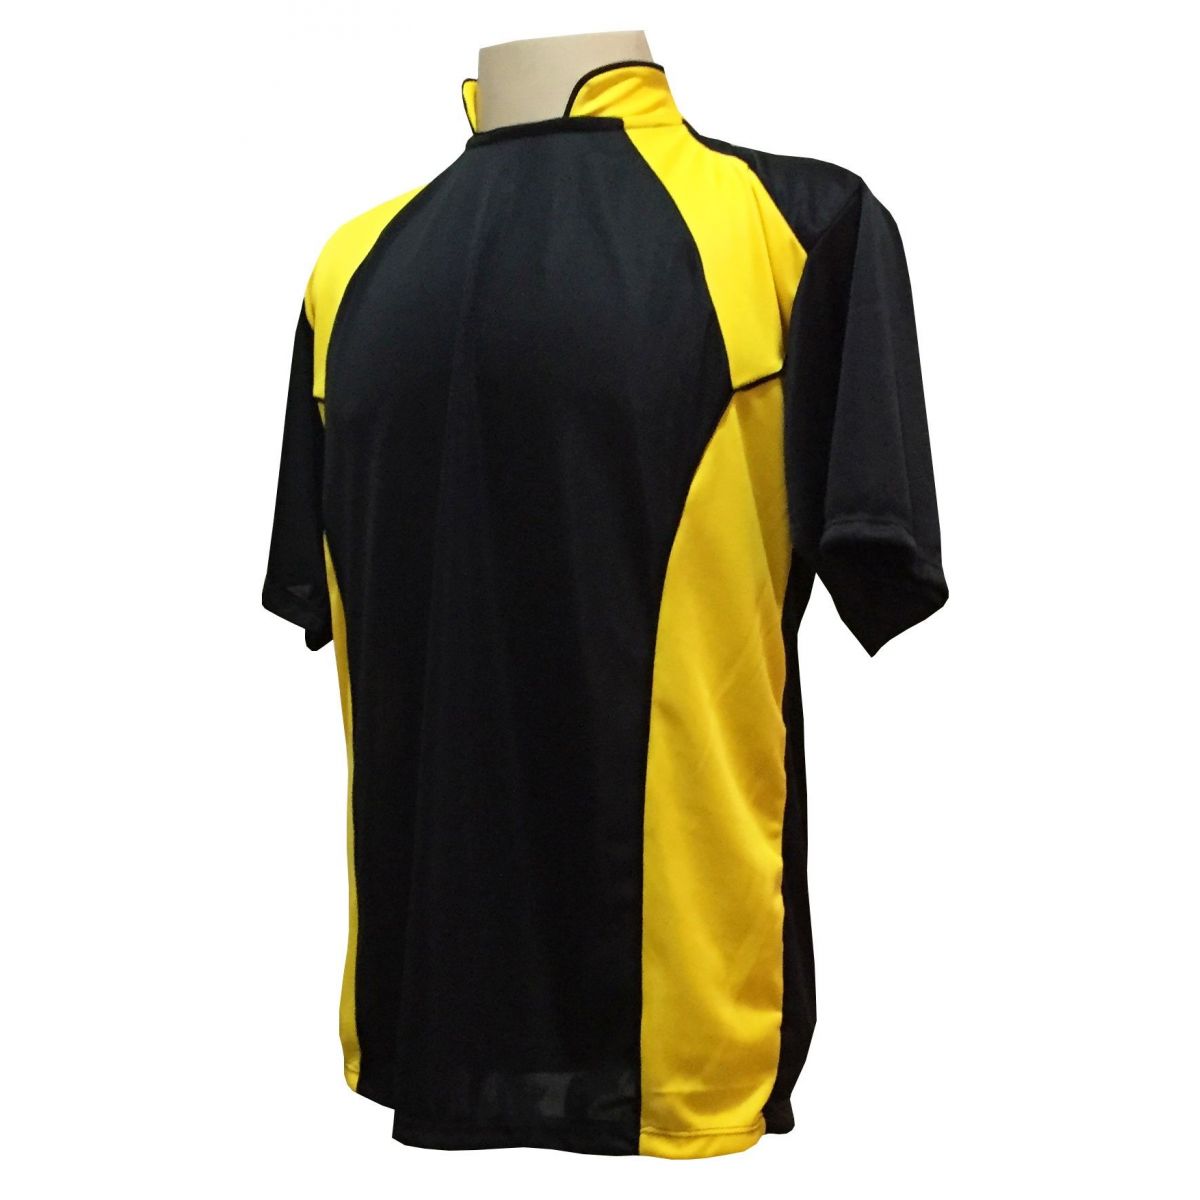 Uniforme Esportivo com 14 camisas modelo Suécia Preto/Amarelo + 14 calções modelo Copa Preto/Amarelo + Brindes